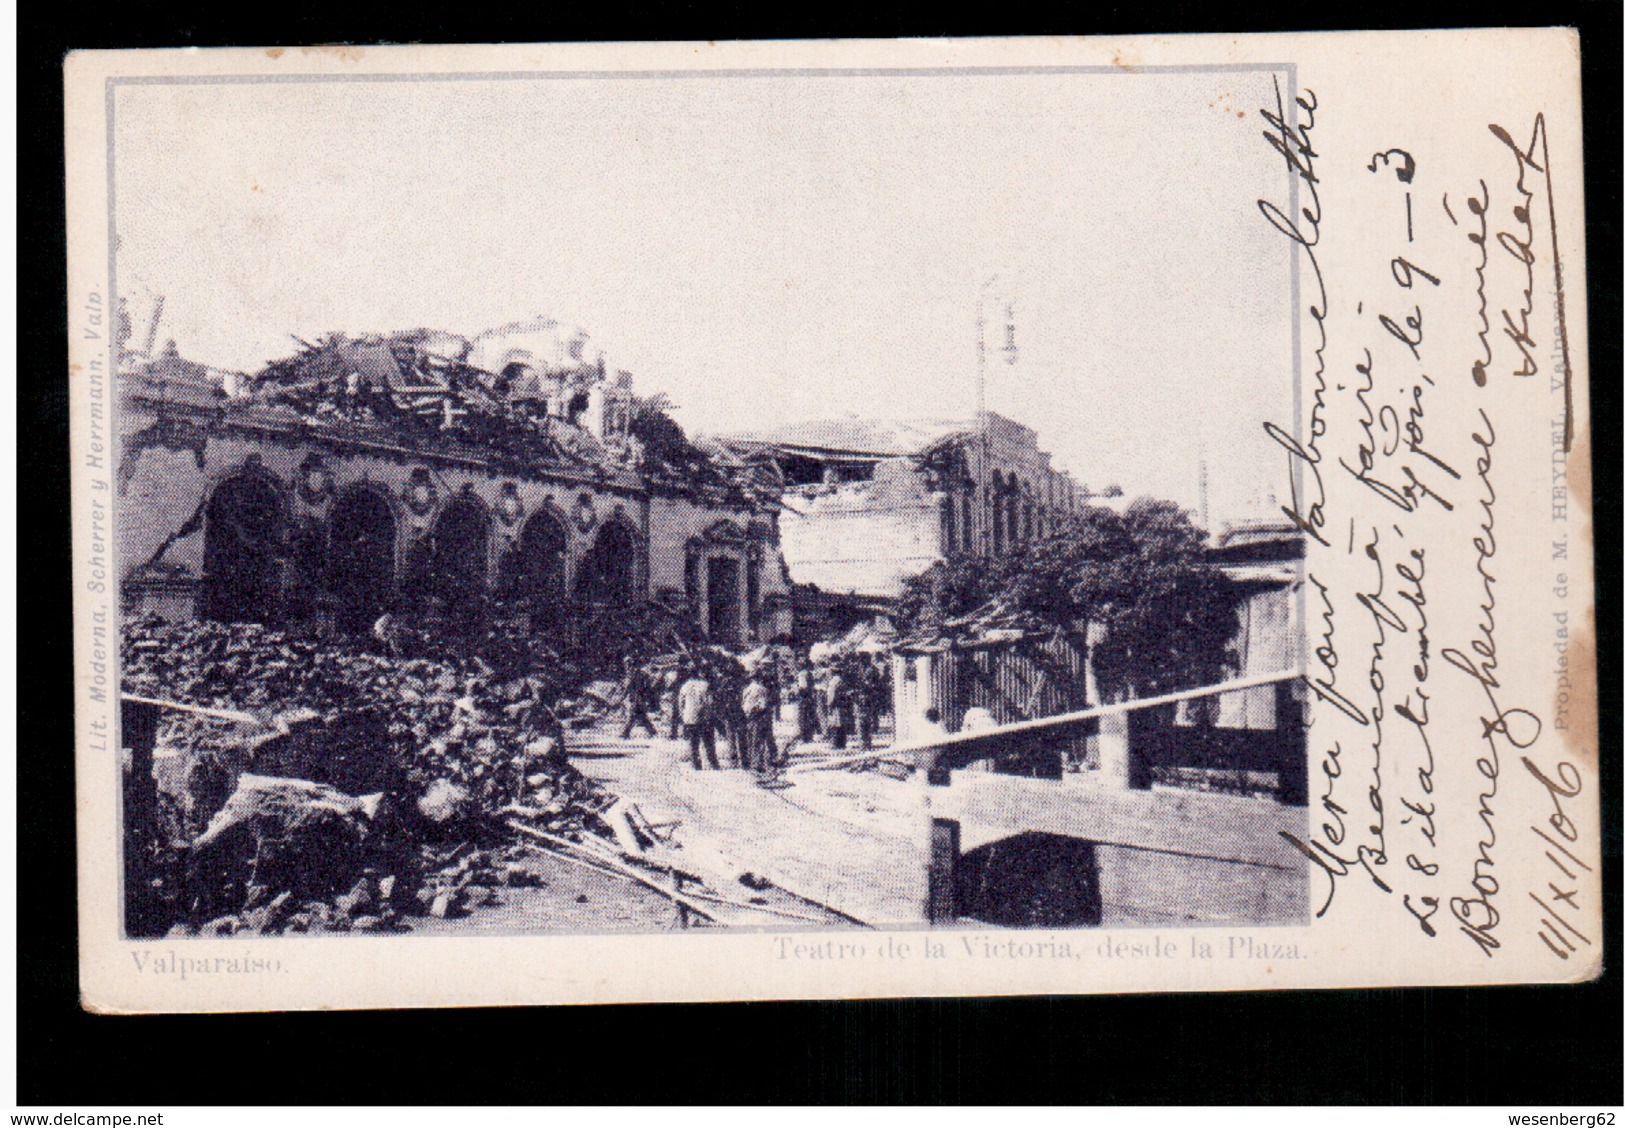 CHILE Valparaiso Teatro De La Victoria Desde La Plaza 1906 OLD POSTCARD 2 Scans - Chile